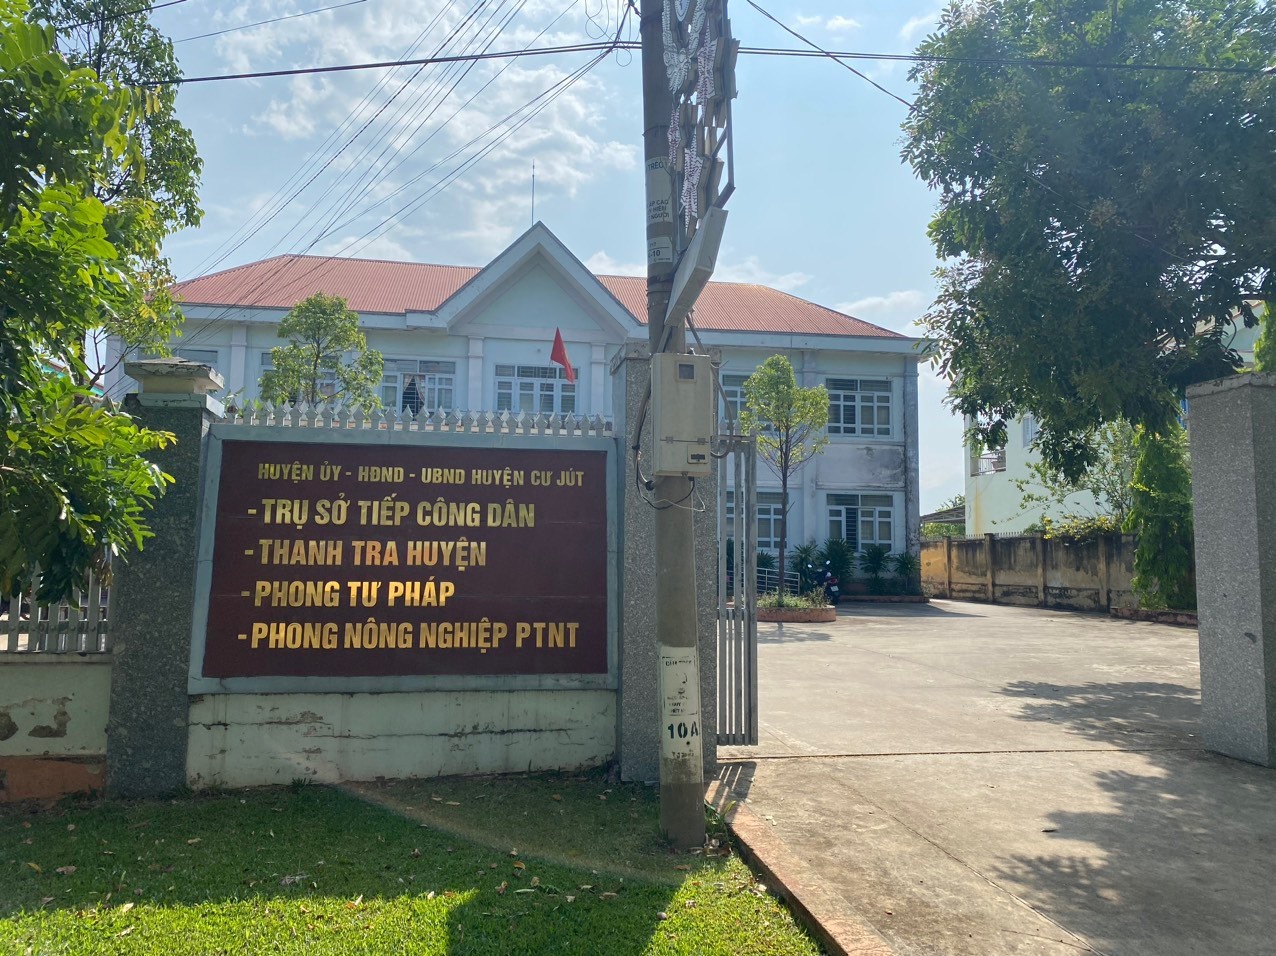 Phòng Tư pháp nằm trong trụ sở khu liên cơ quan huyện Cư Jút, nơi một cán bộ Đảng viên đang bị tố cáo về hành vi trộm cắp. Ảnh: Công Bắc